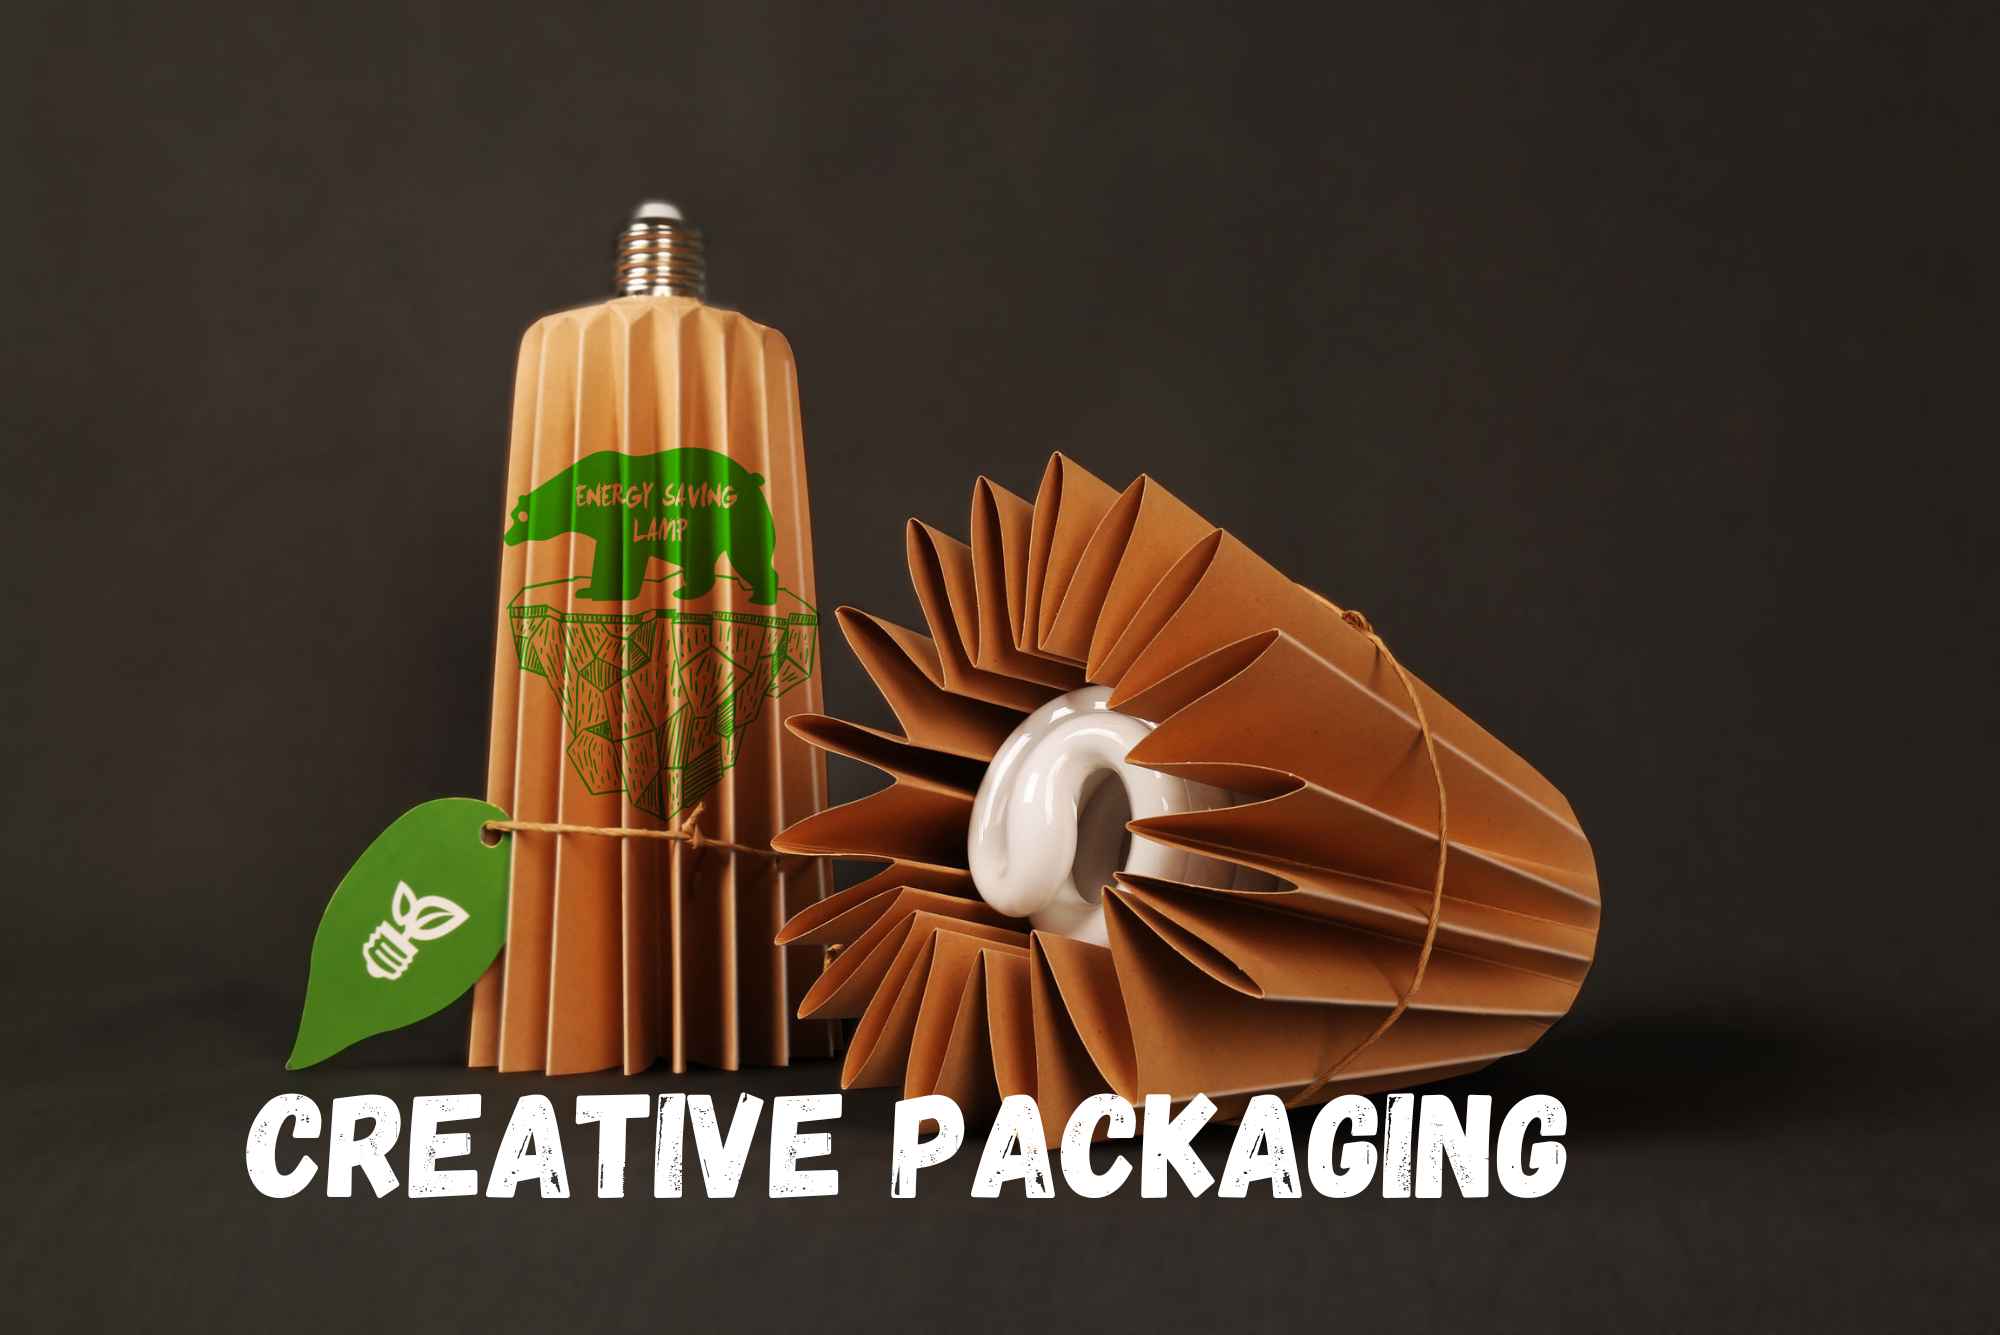 Creative packaging